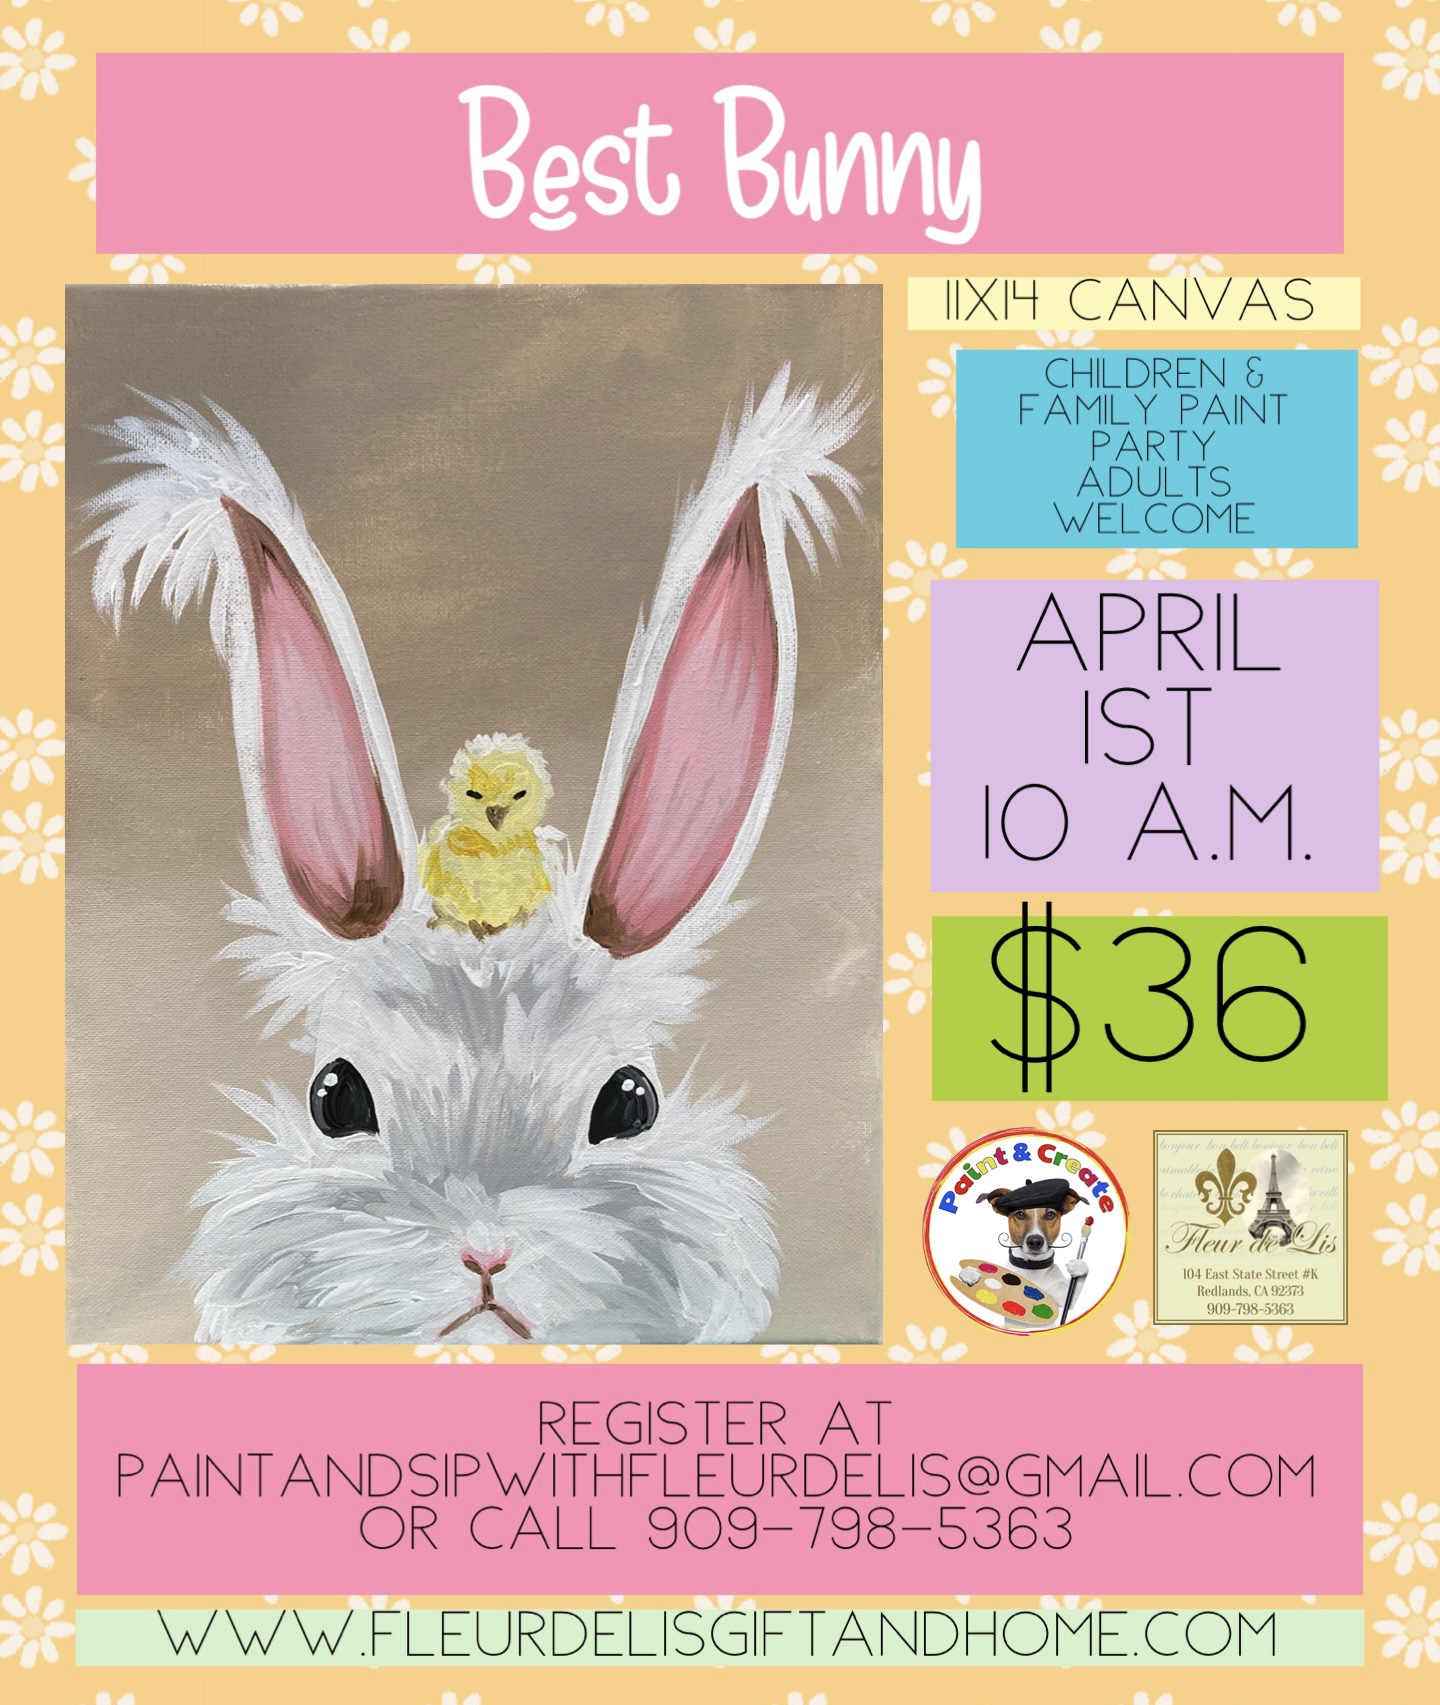 Best Bunny April 1st 10 a.m.